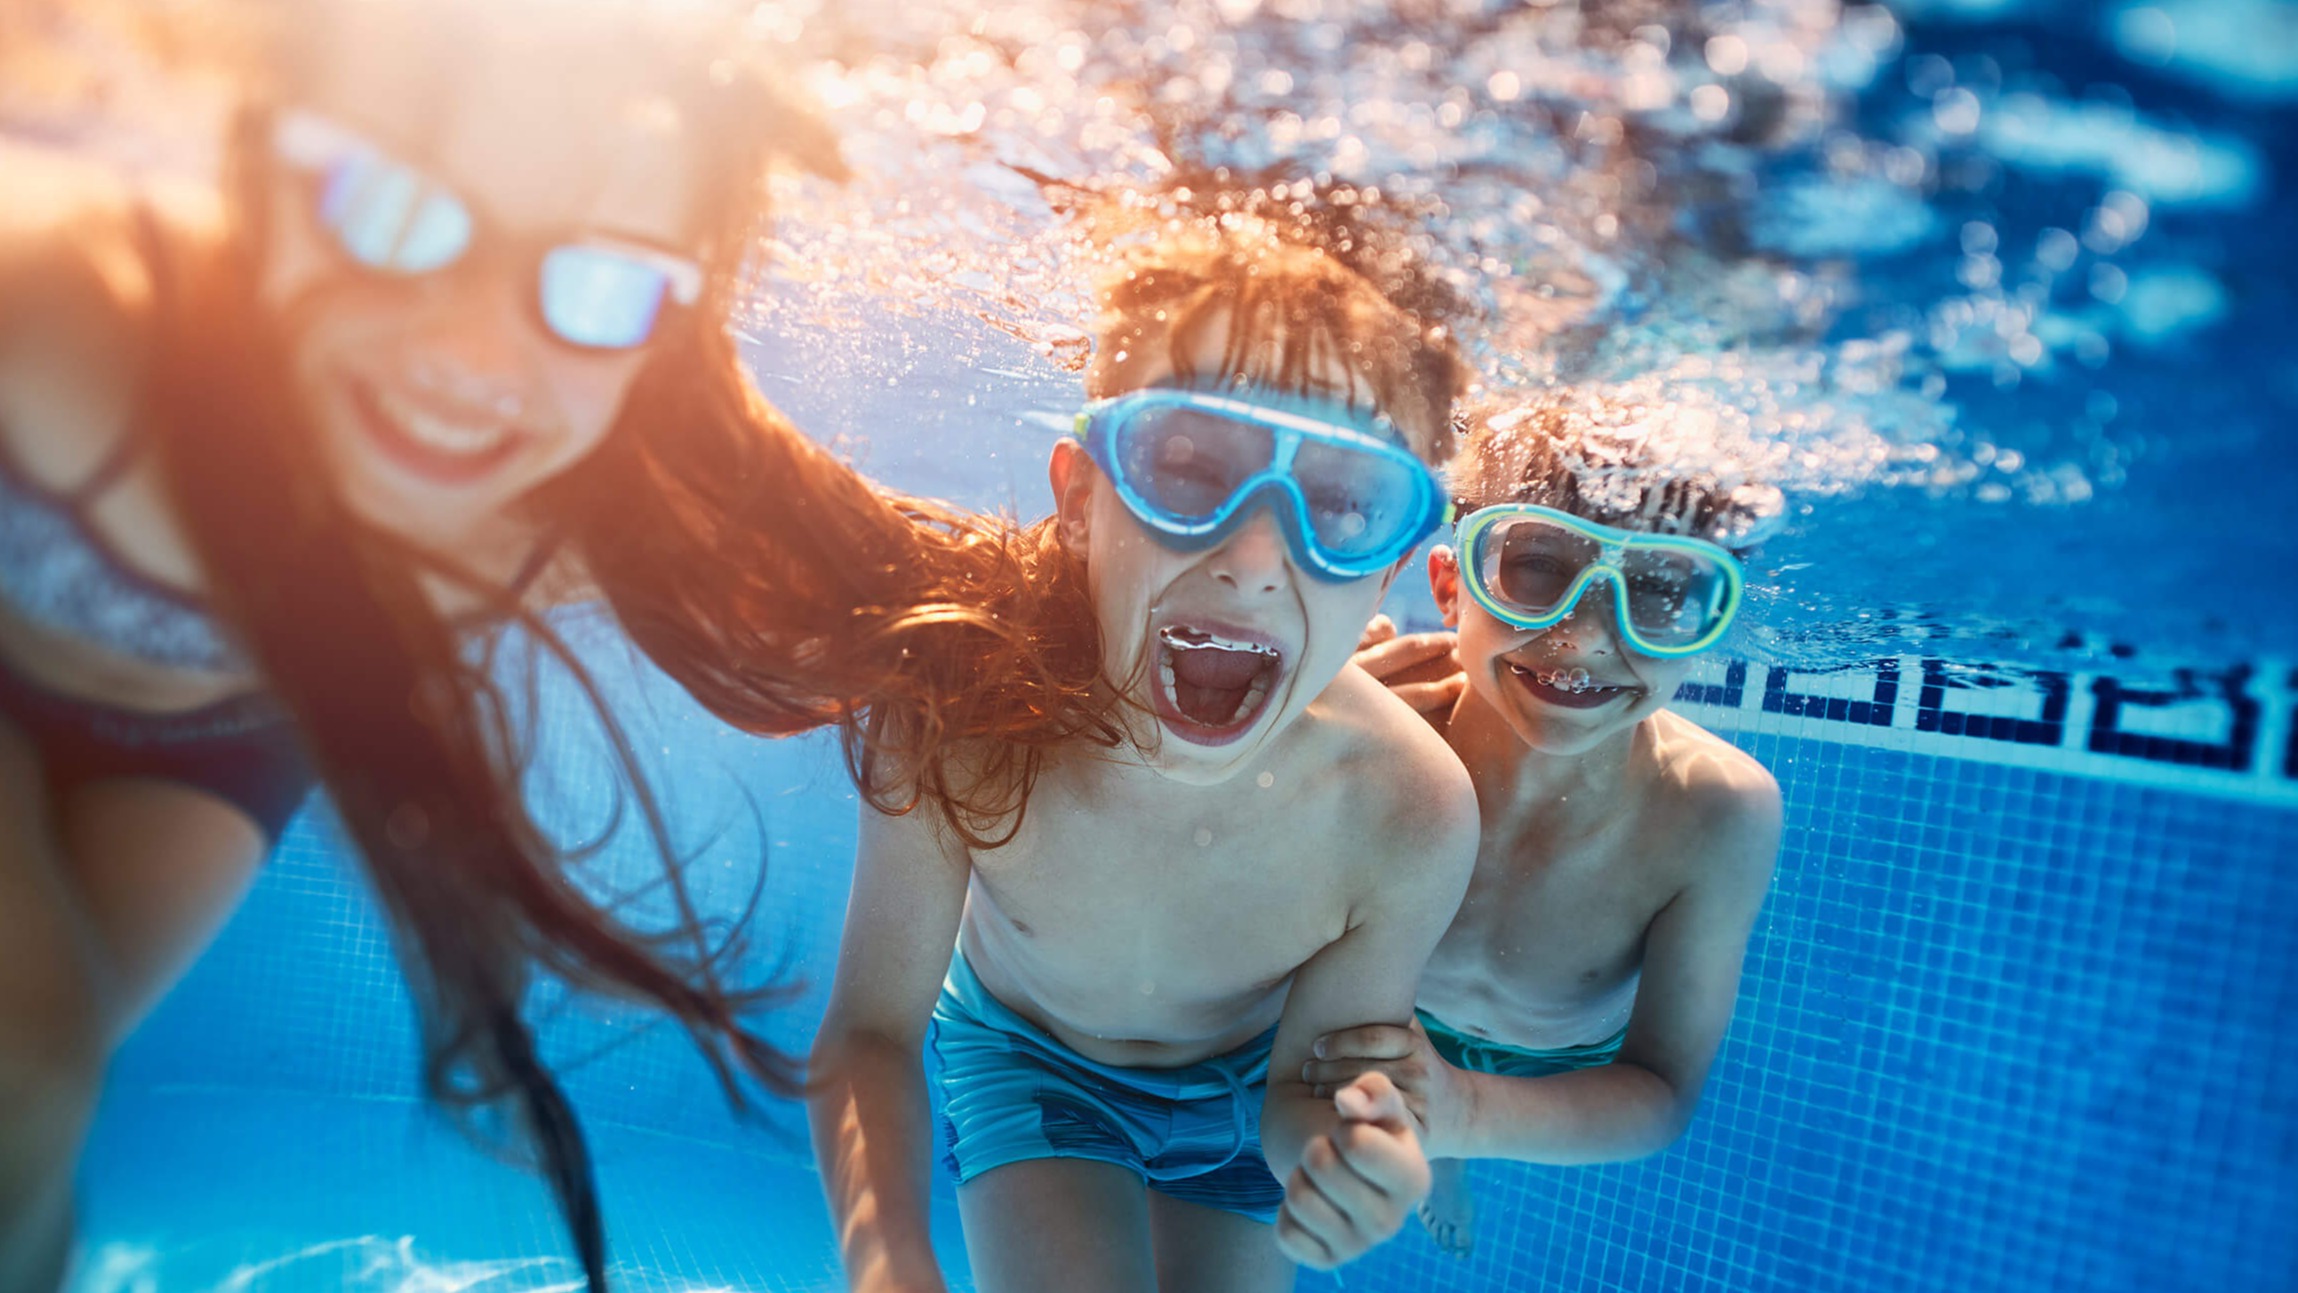 Børn med dykkermasker leger under vandet i en pool.